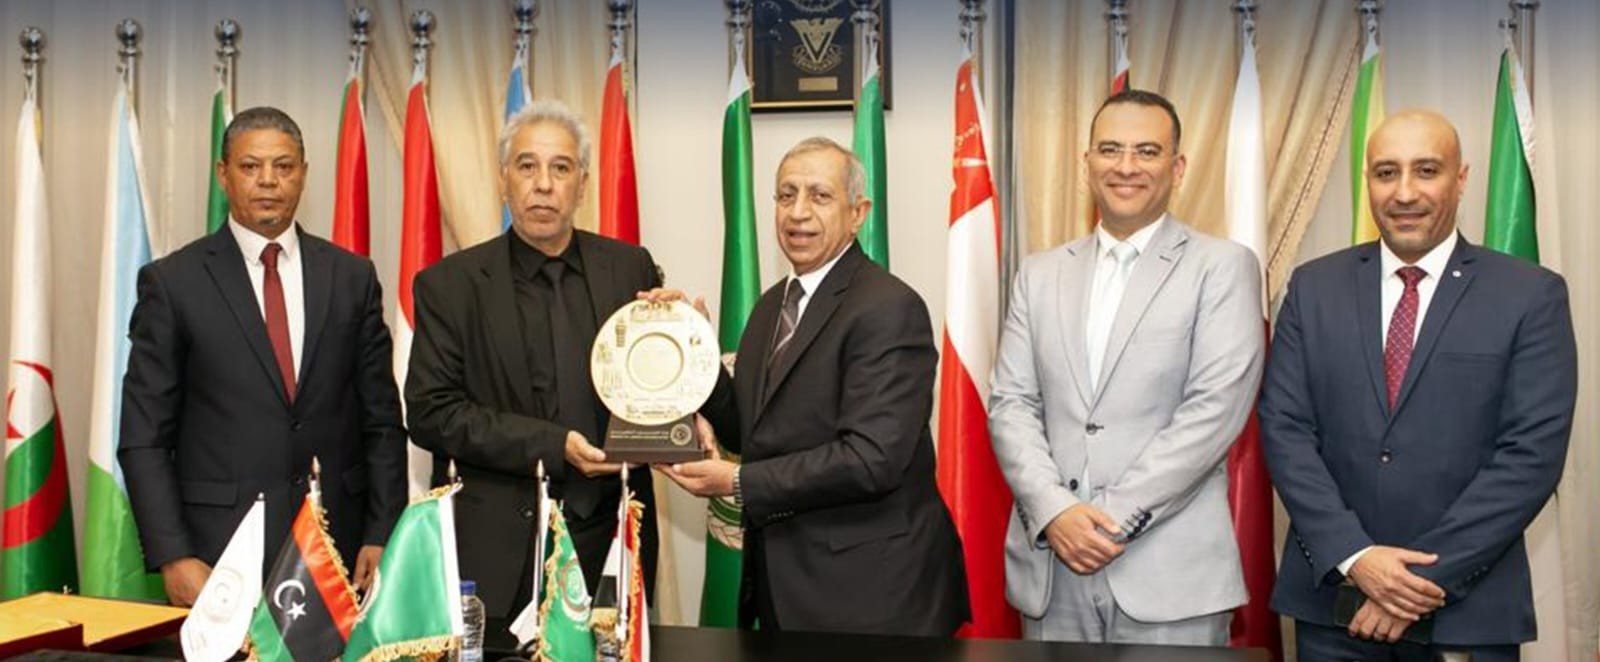 وزارة العمل بحكومة الوحدة توقع مذكرة تفاهم مع الأكاديمية العربية للعلوم والتكنولوجيا